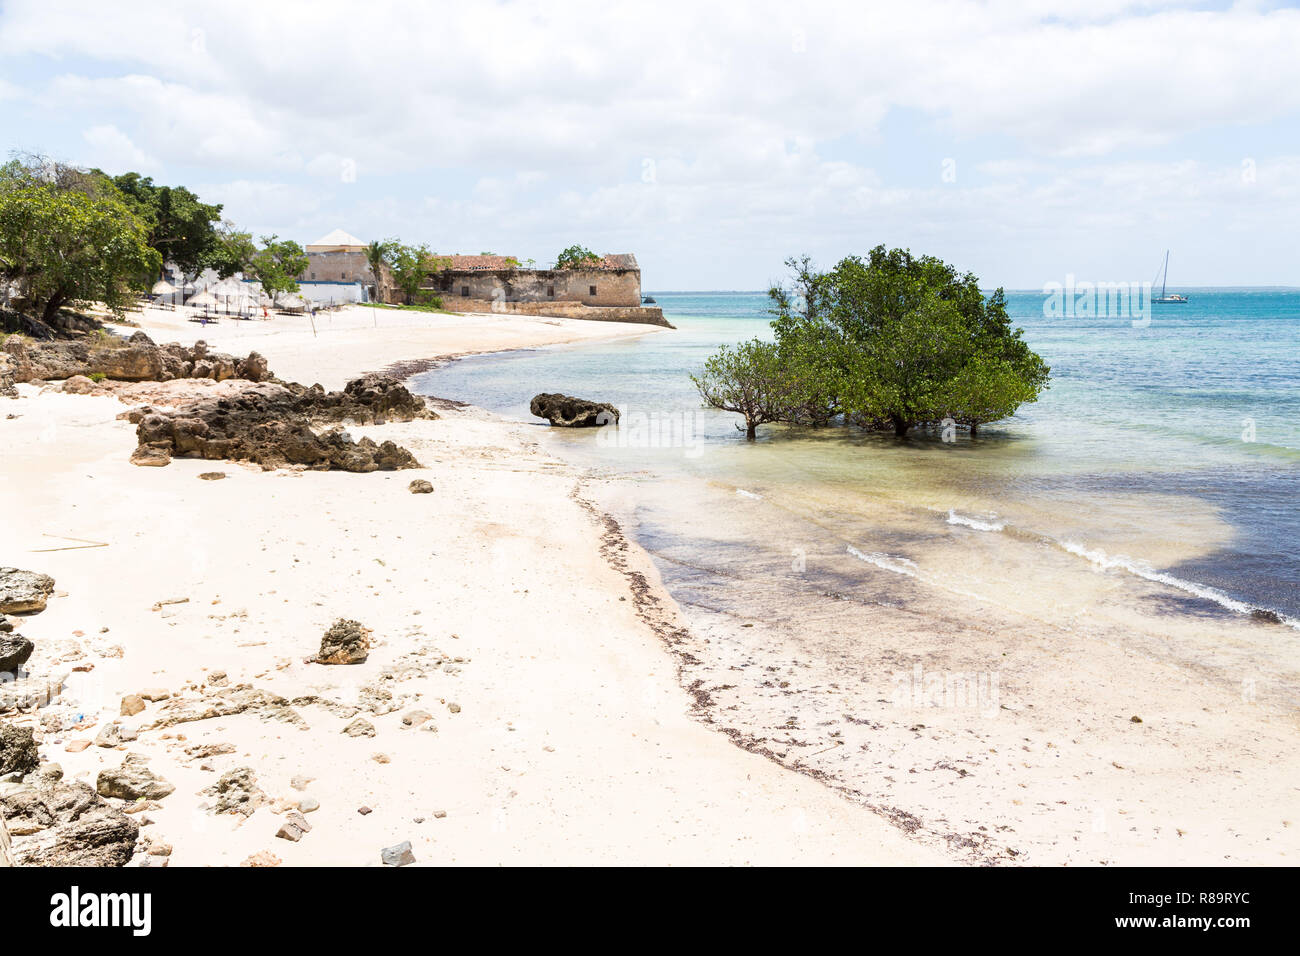 Leere Sandstrand von Mosambik Insel (Ilha de Mocambique), Mangroven und Reste einer Colonial House, Indischer Ozean. Nampula. Portugiesisch Ostafrika. Stockfoto